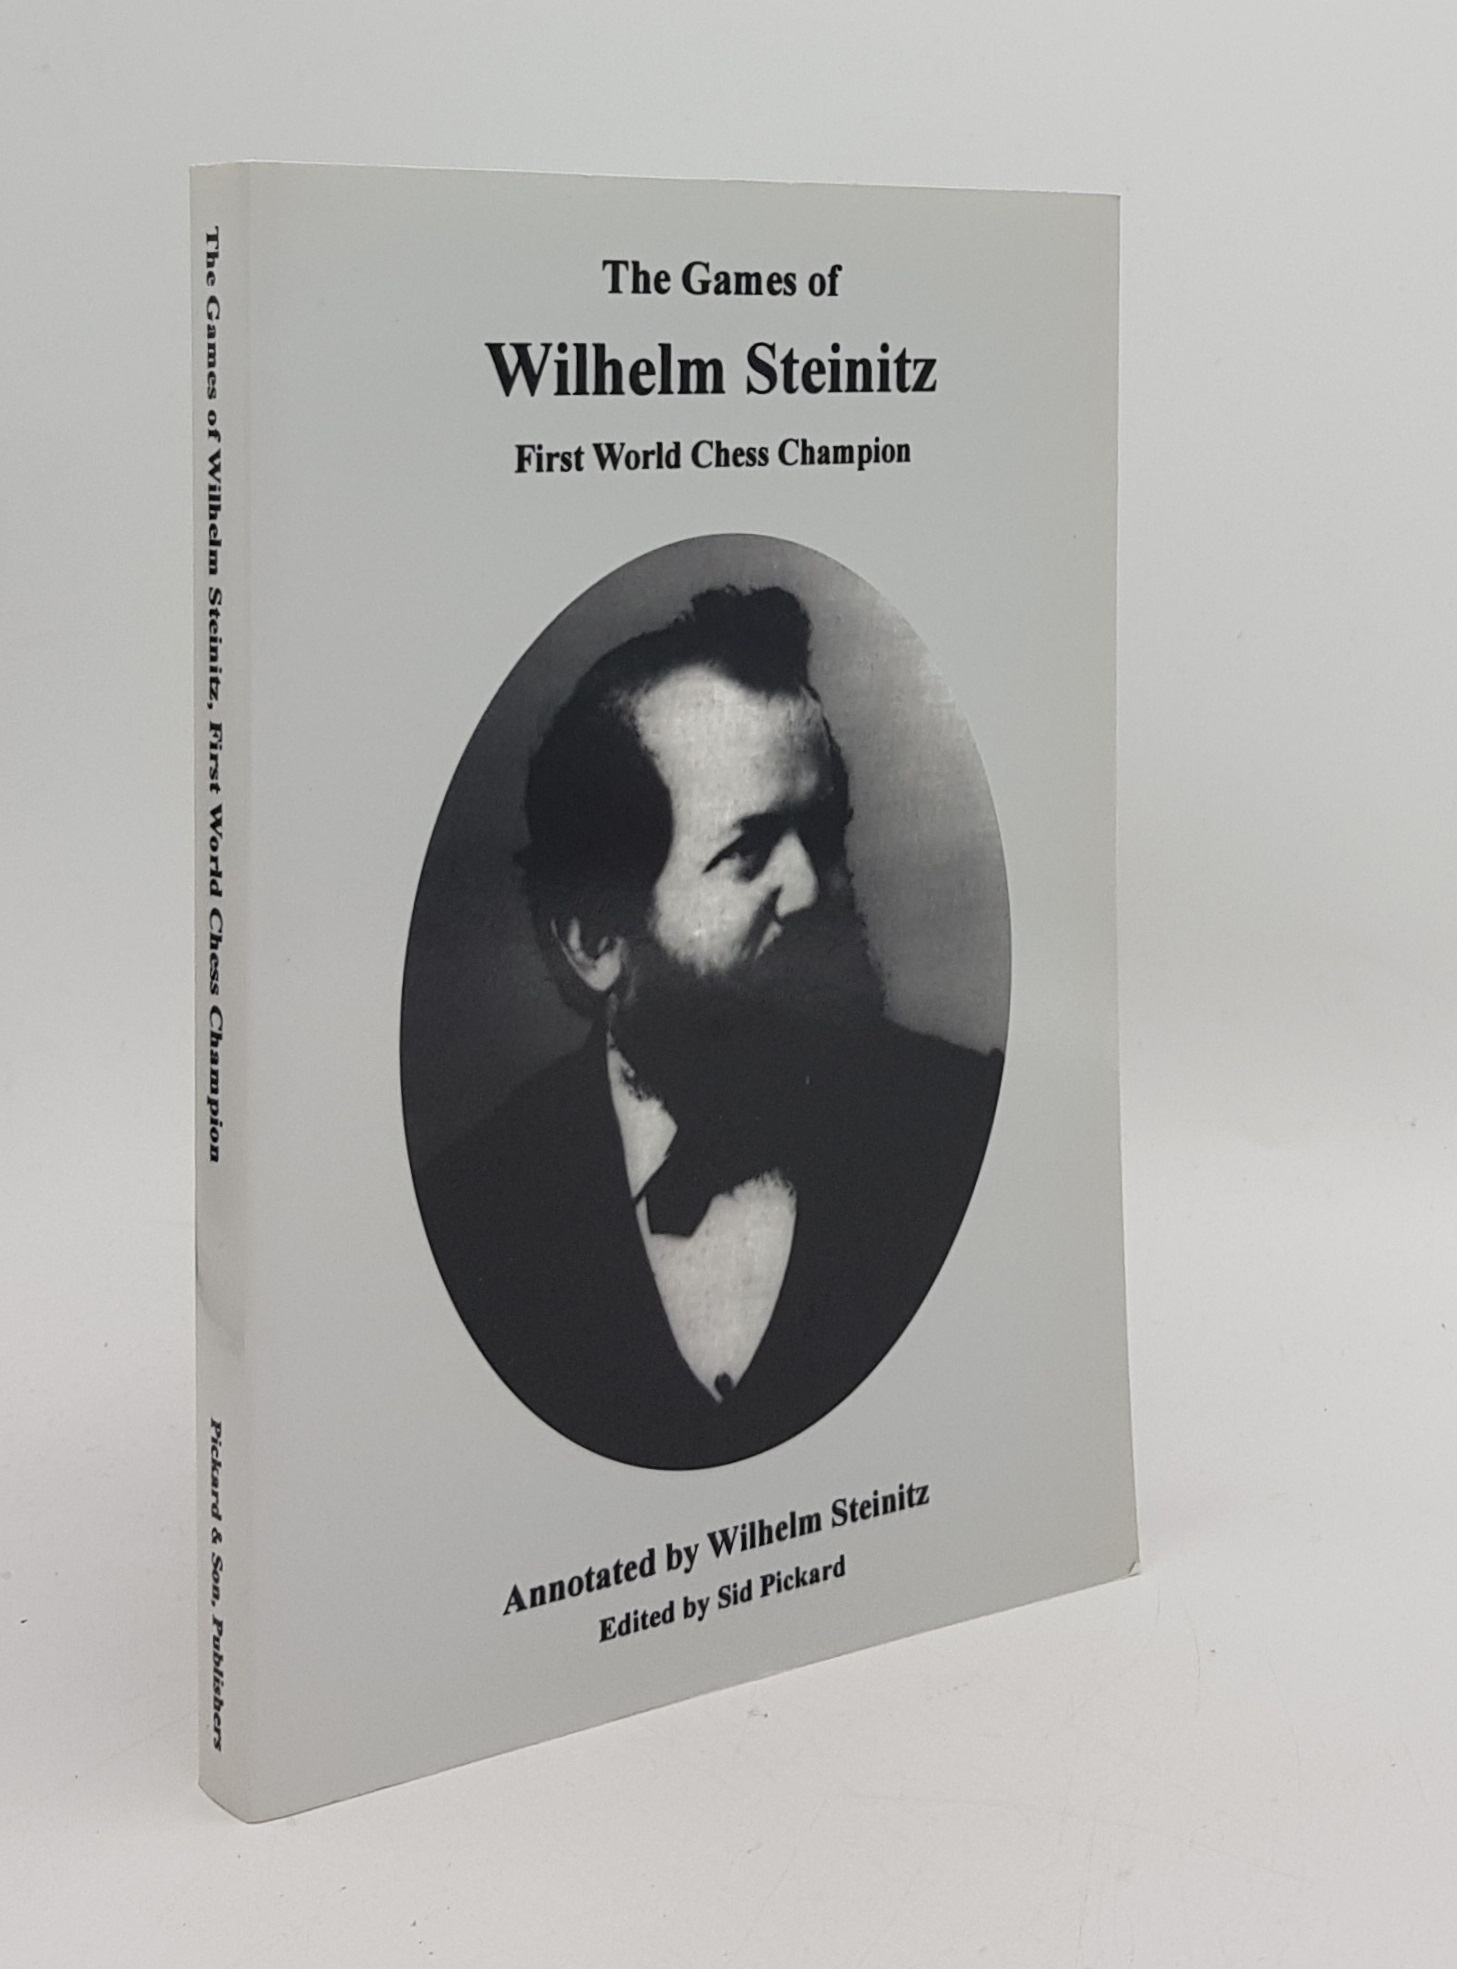 THE GAMES OF WILHELM STEINITZ First World Chess Champion - STEINITZ Wilhelm, PICKARD Sid